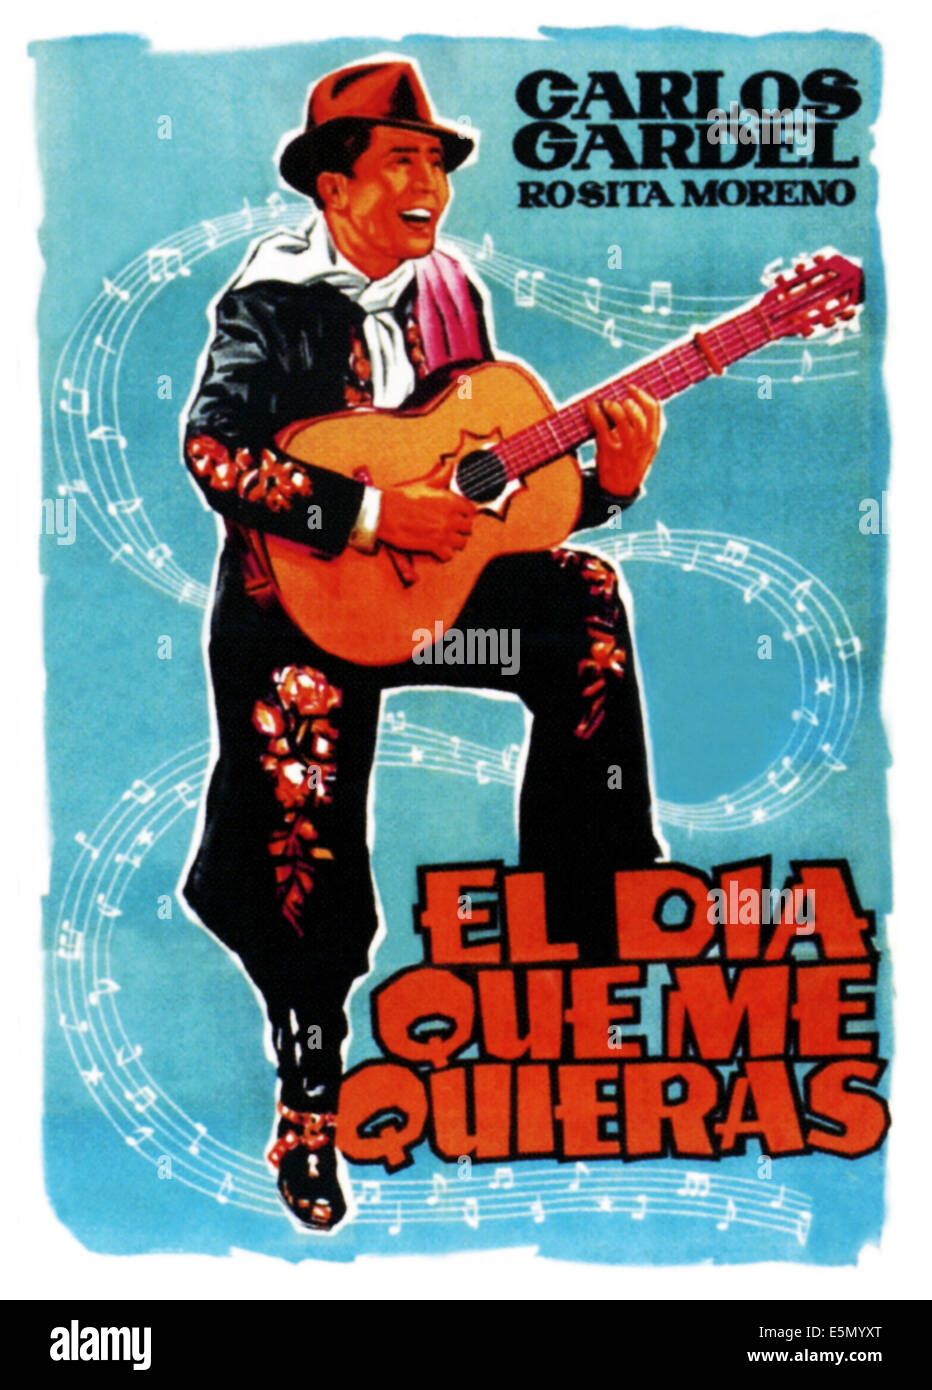 EL DIA QUE ME QUIERAS, Carlos Gardel auf spanischen Plakatkunst, 1959. Stockfoto